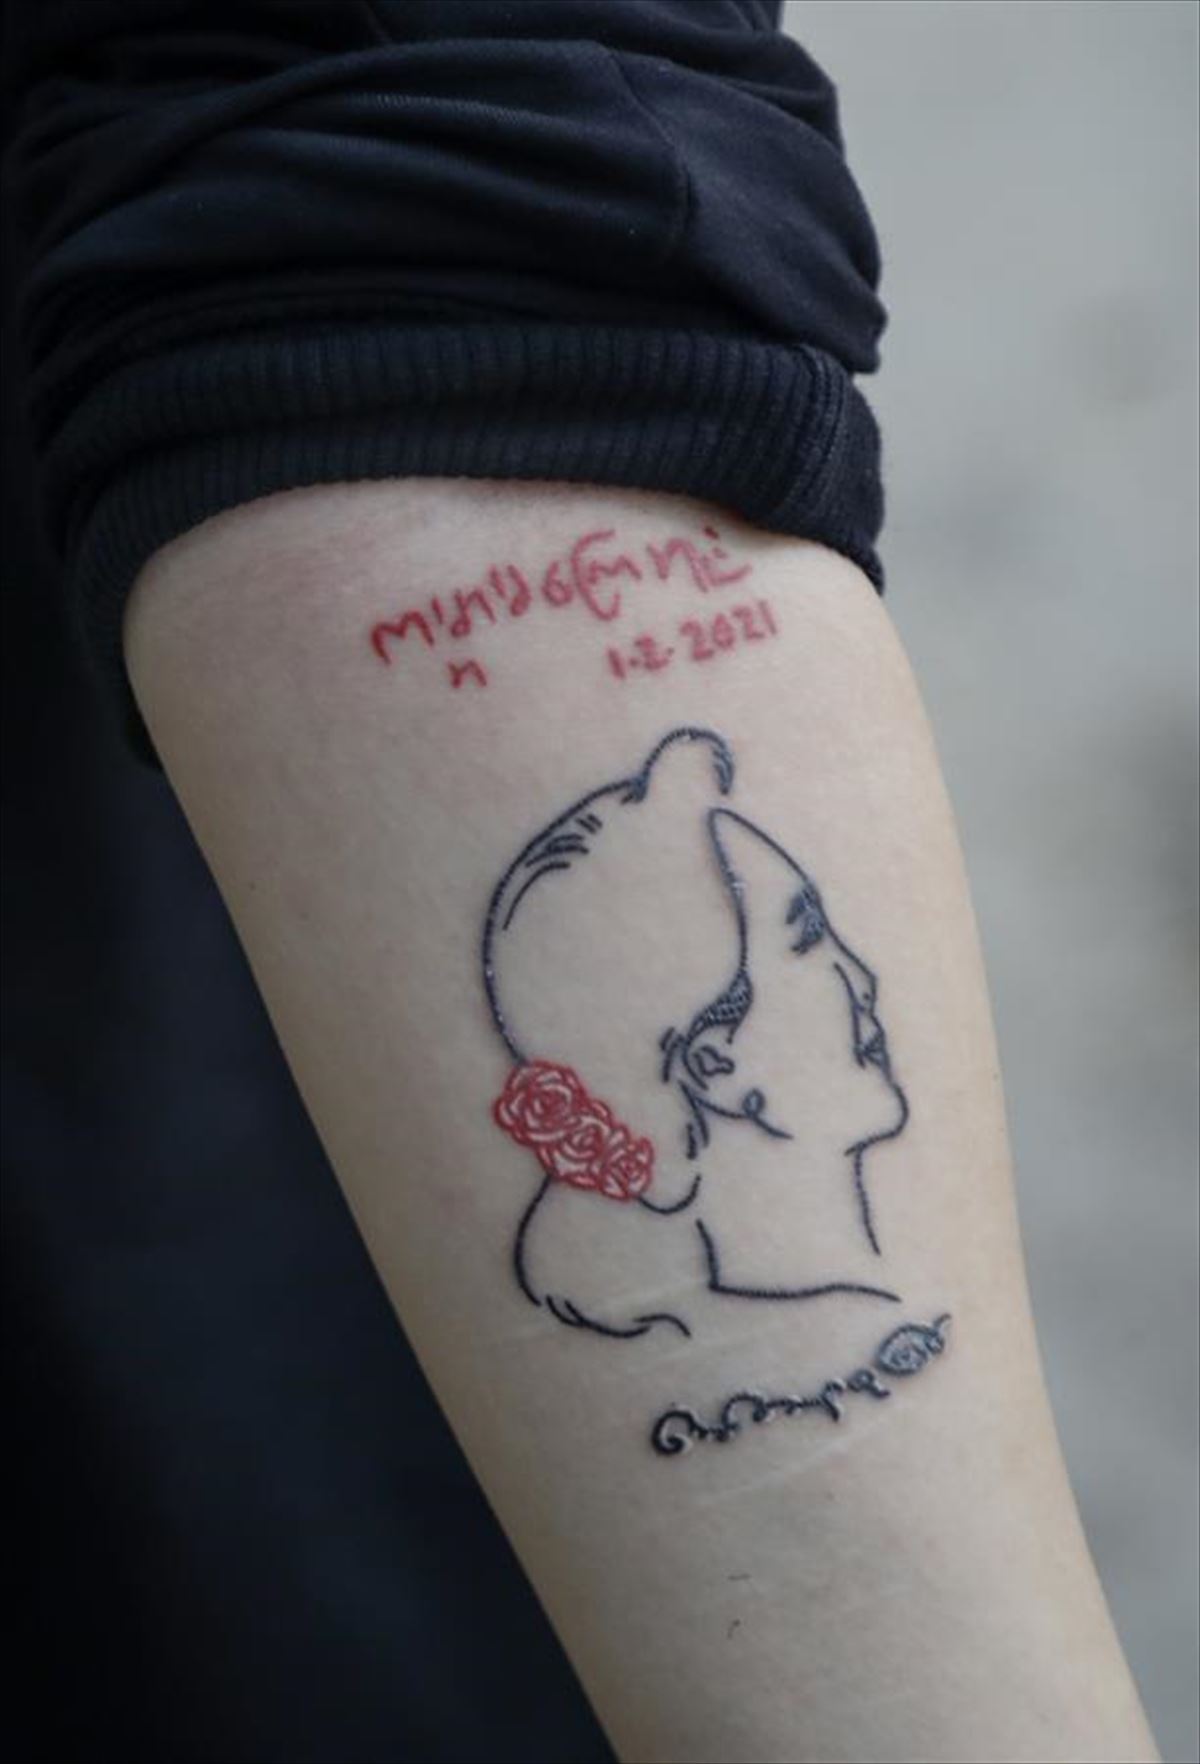 La líder 'de facto' del país, Aung San Suu Kyi, tatuada en el brazo de un manifestante. Foto: EFE